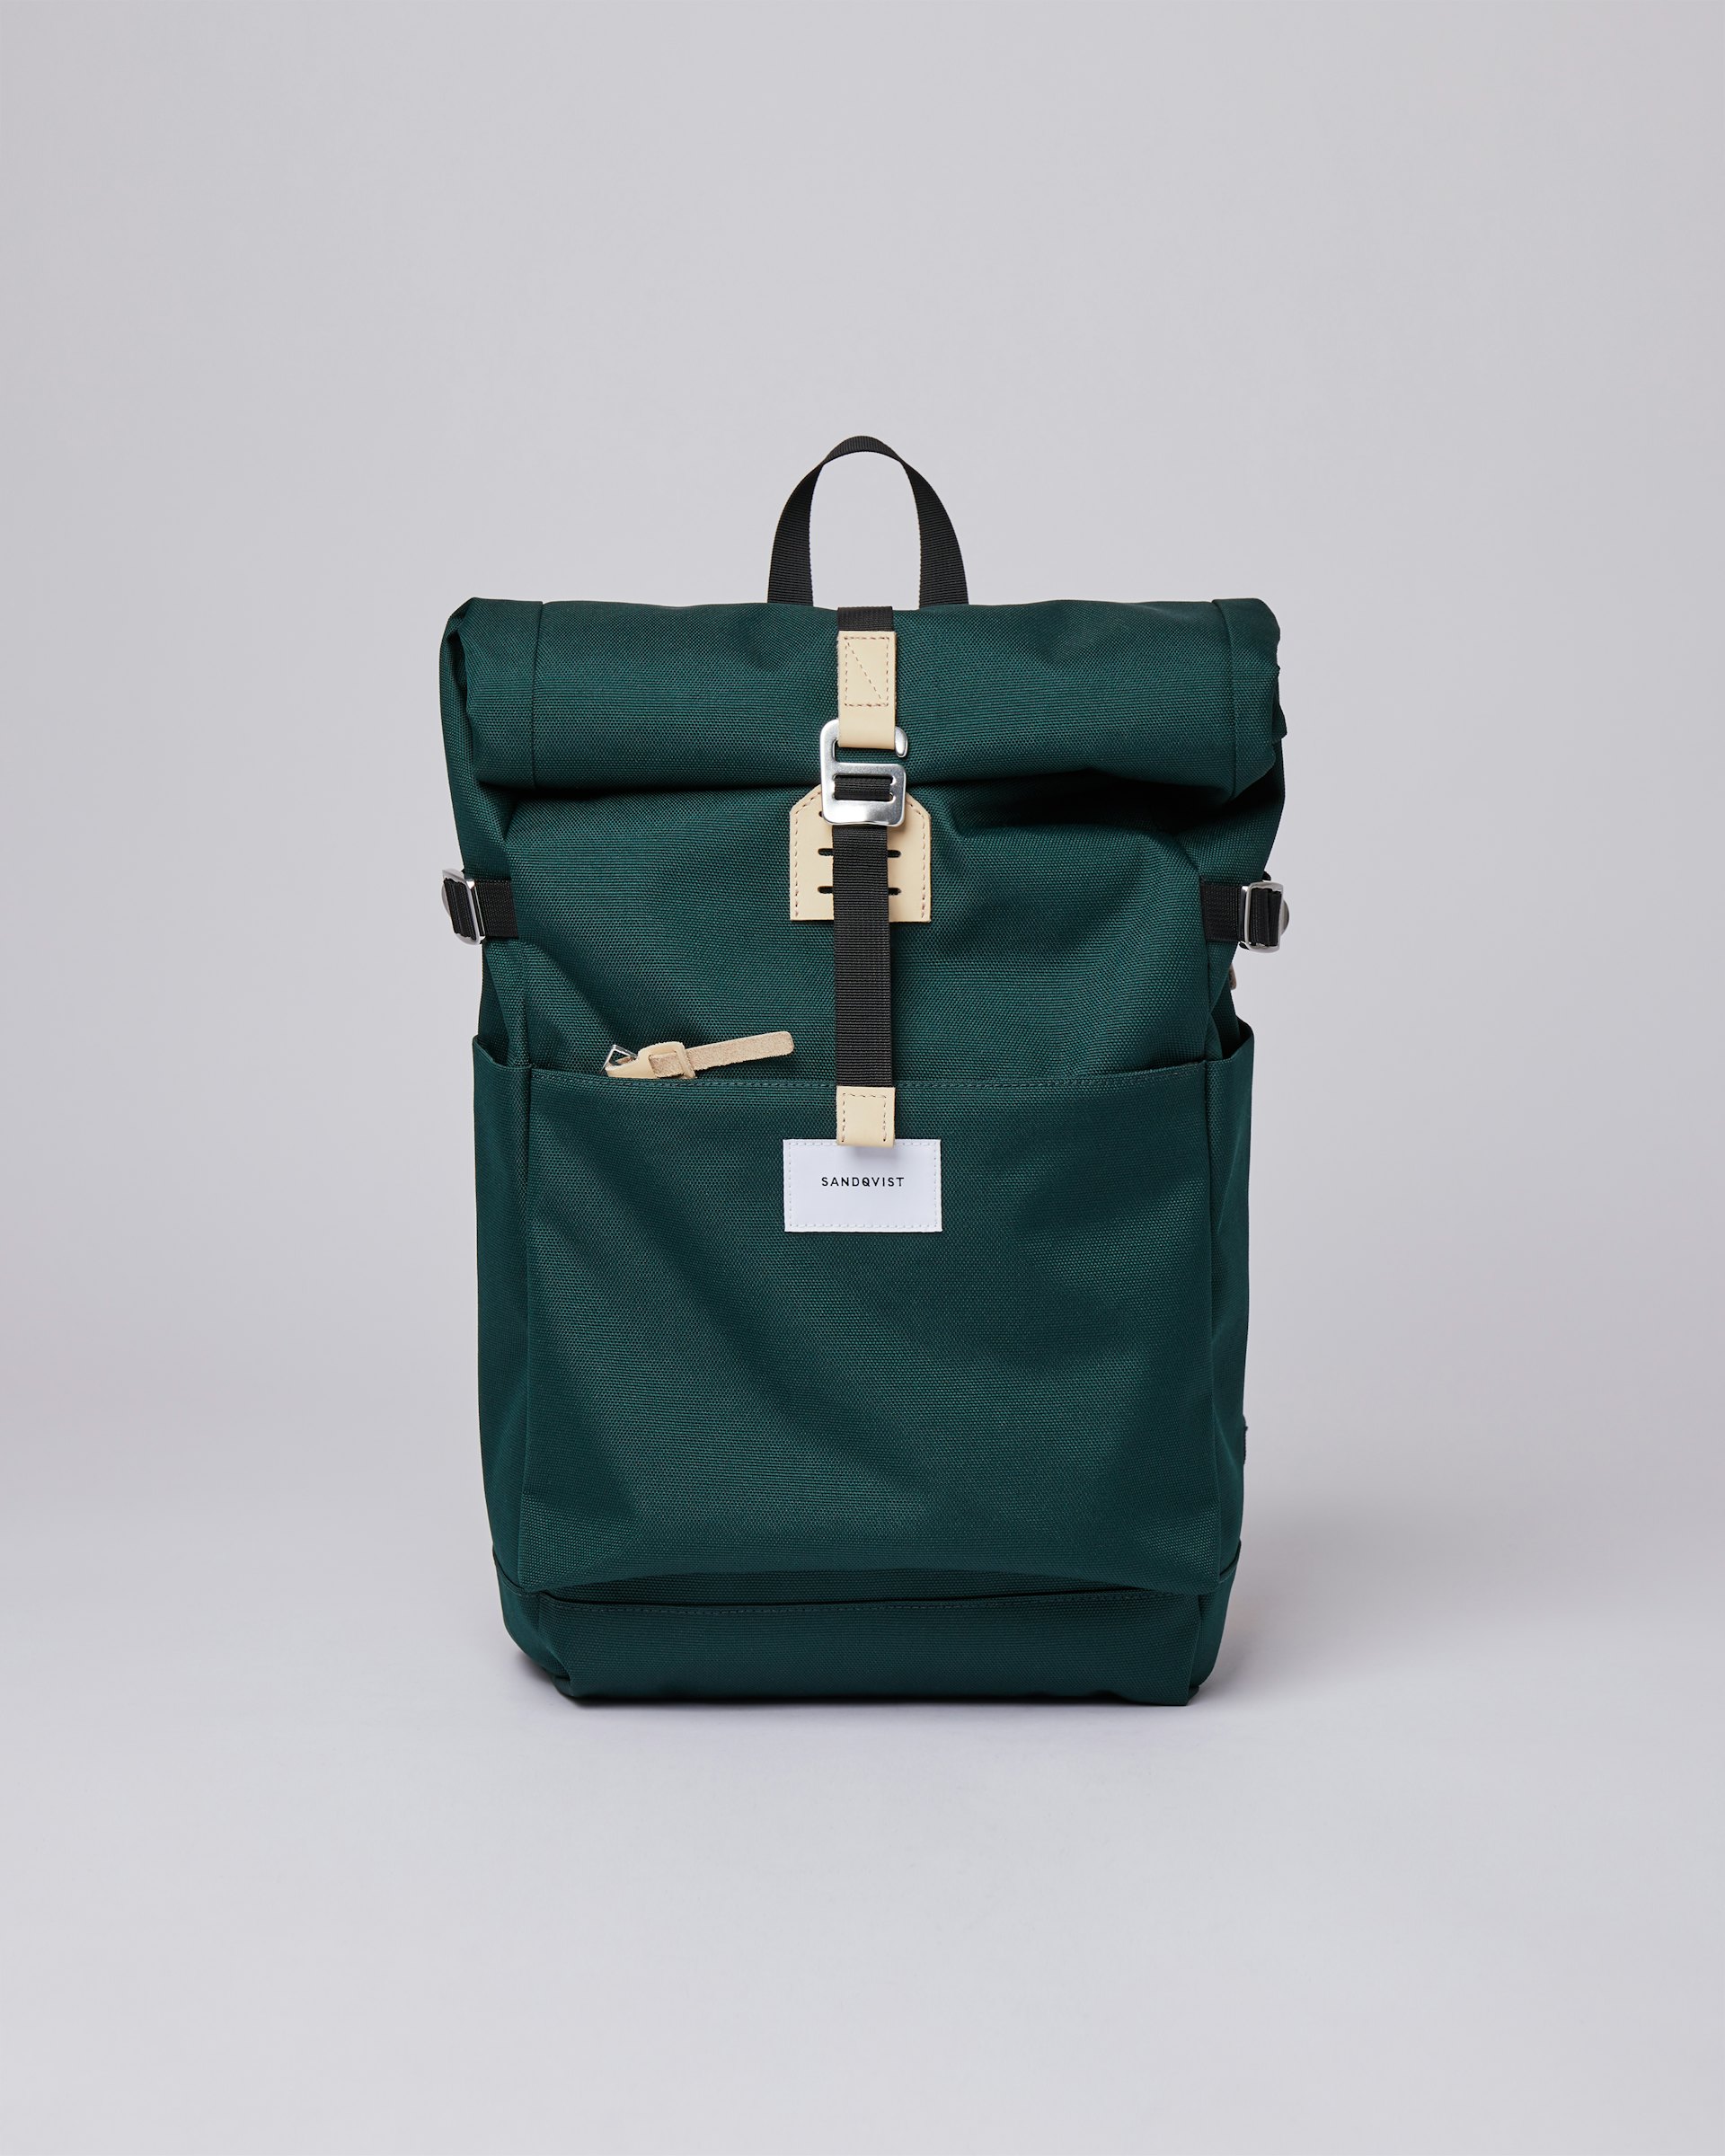 Ilon gehört zur kategorie Backpacks und ist farbig green